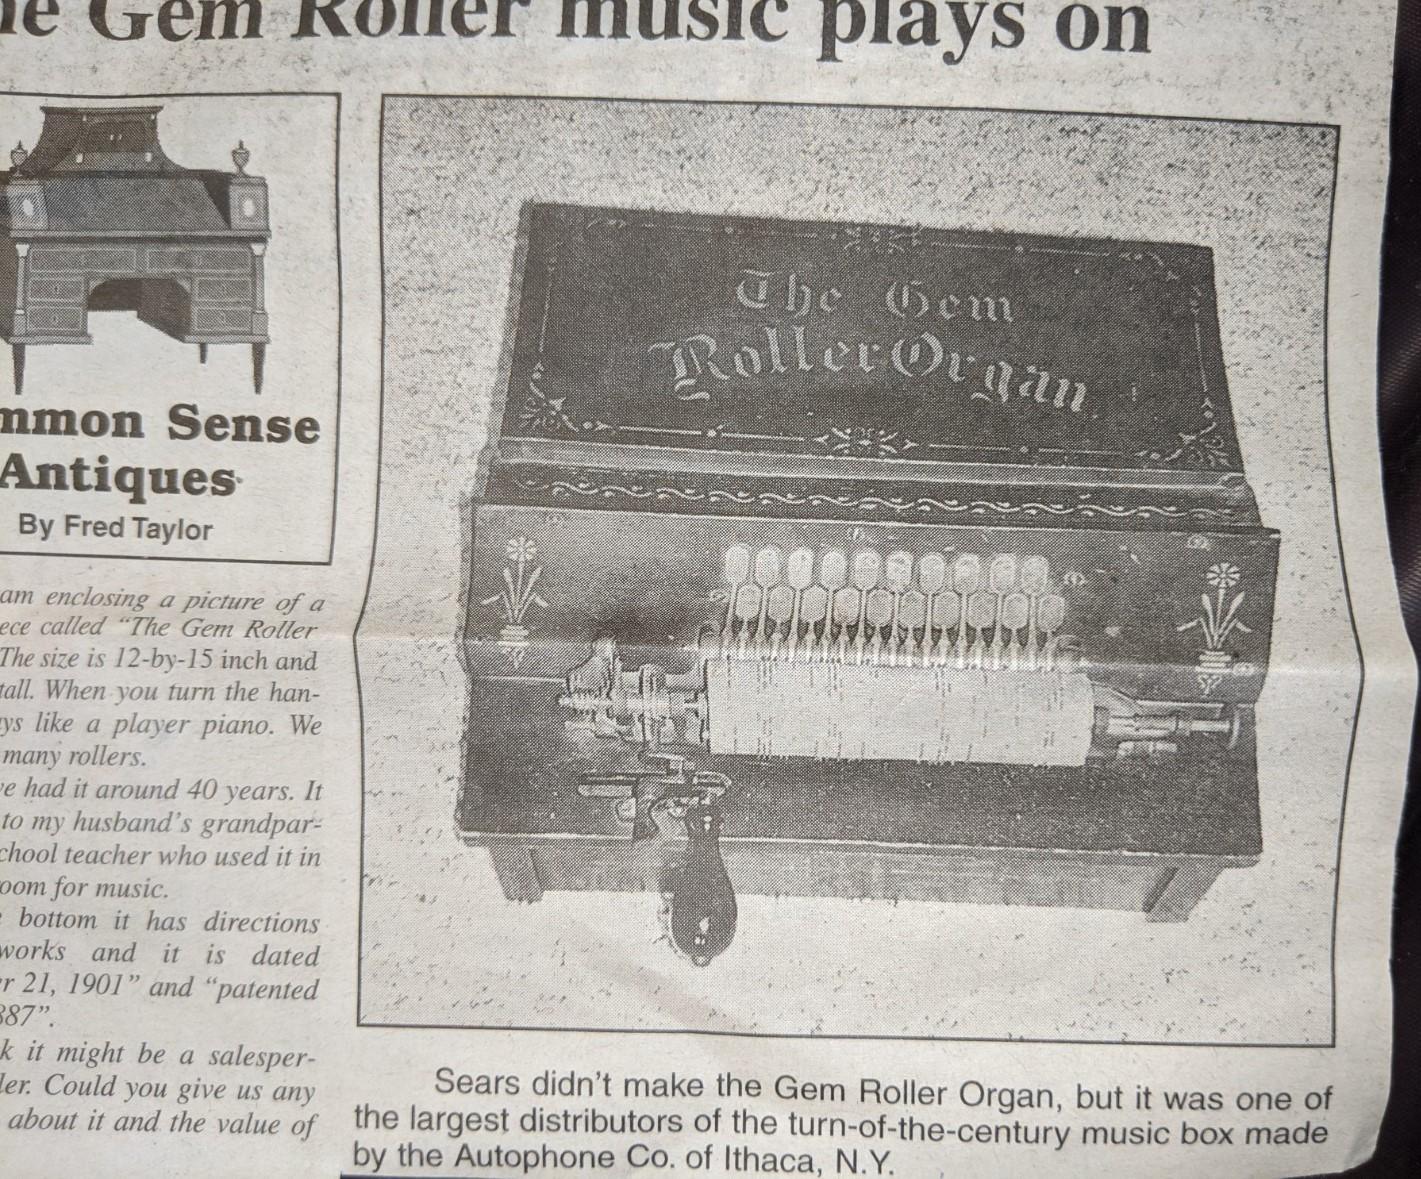 "The Gem Roller Organ" musical instrument